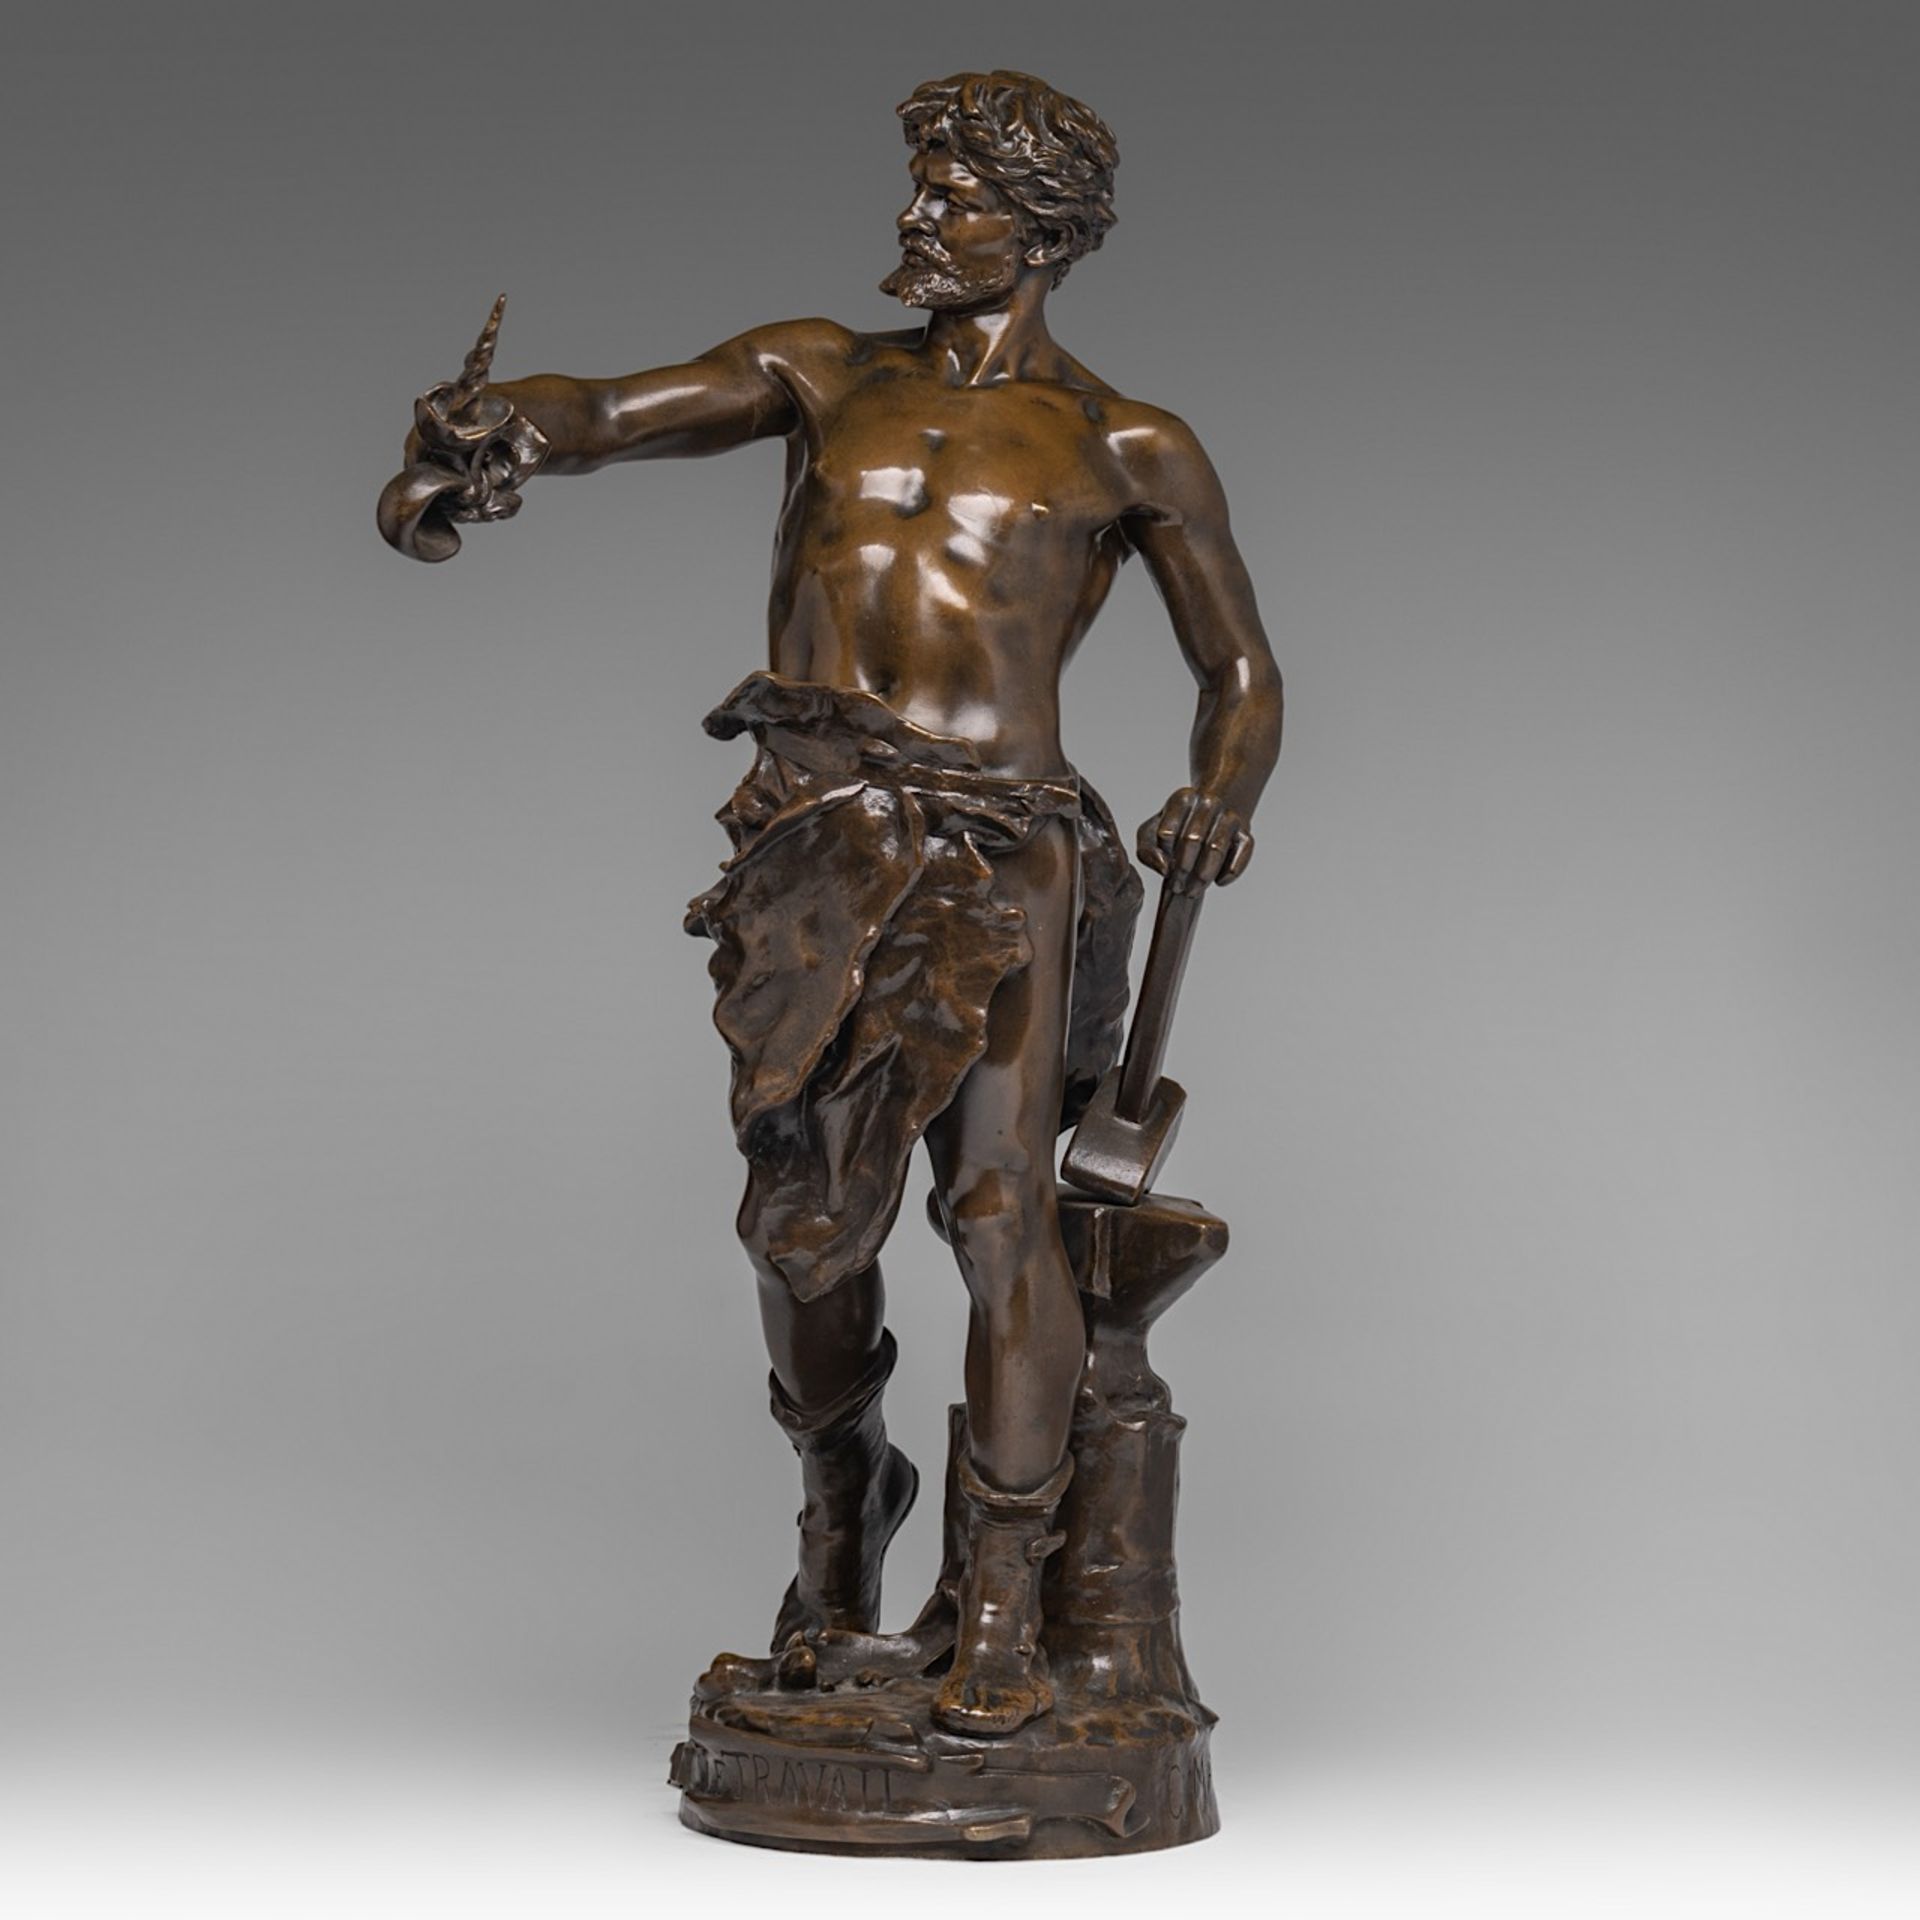 Claudius Mariton (1844-1919), 'Le Travail', patinated bronze, H 65 cm